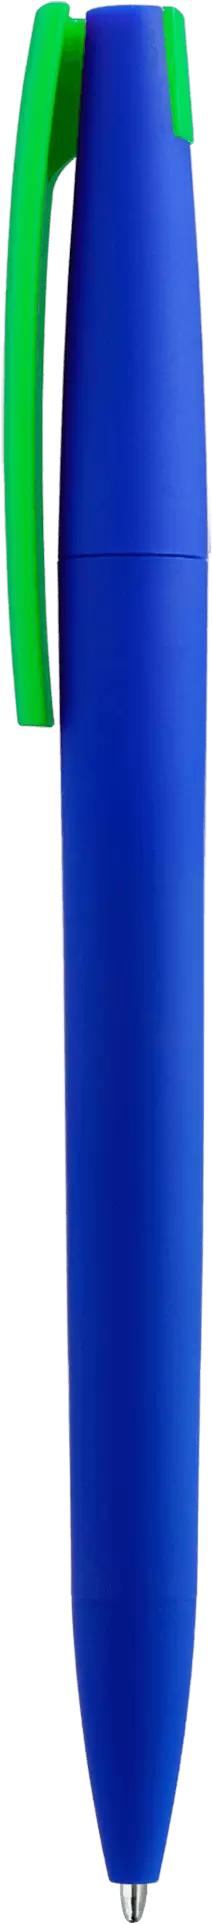 Ручка ZETA SOFT MIX Синяя с салатовым 1024-01-15